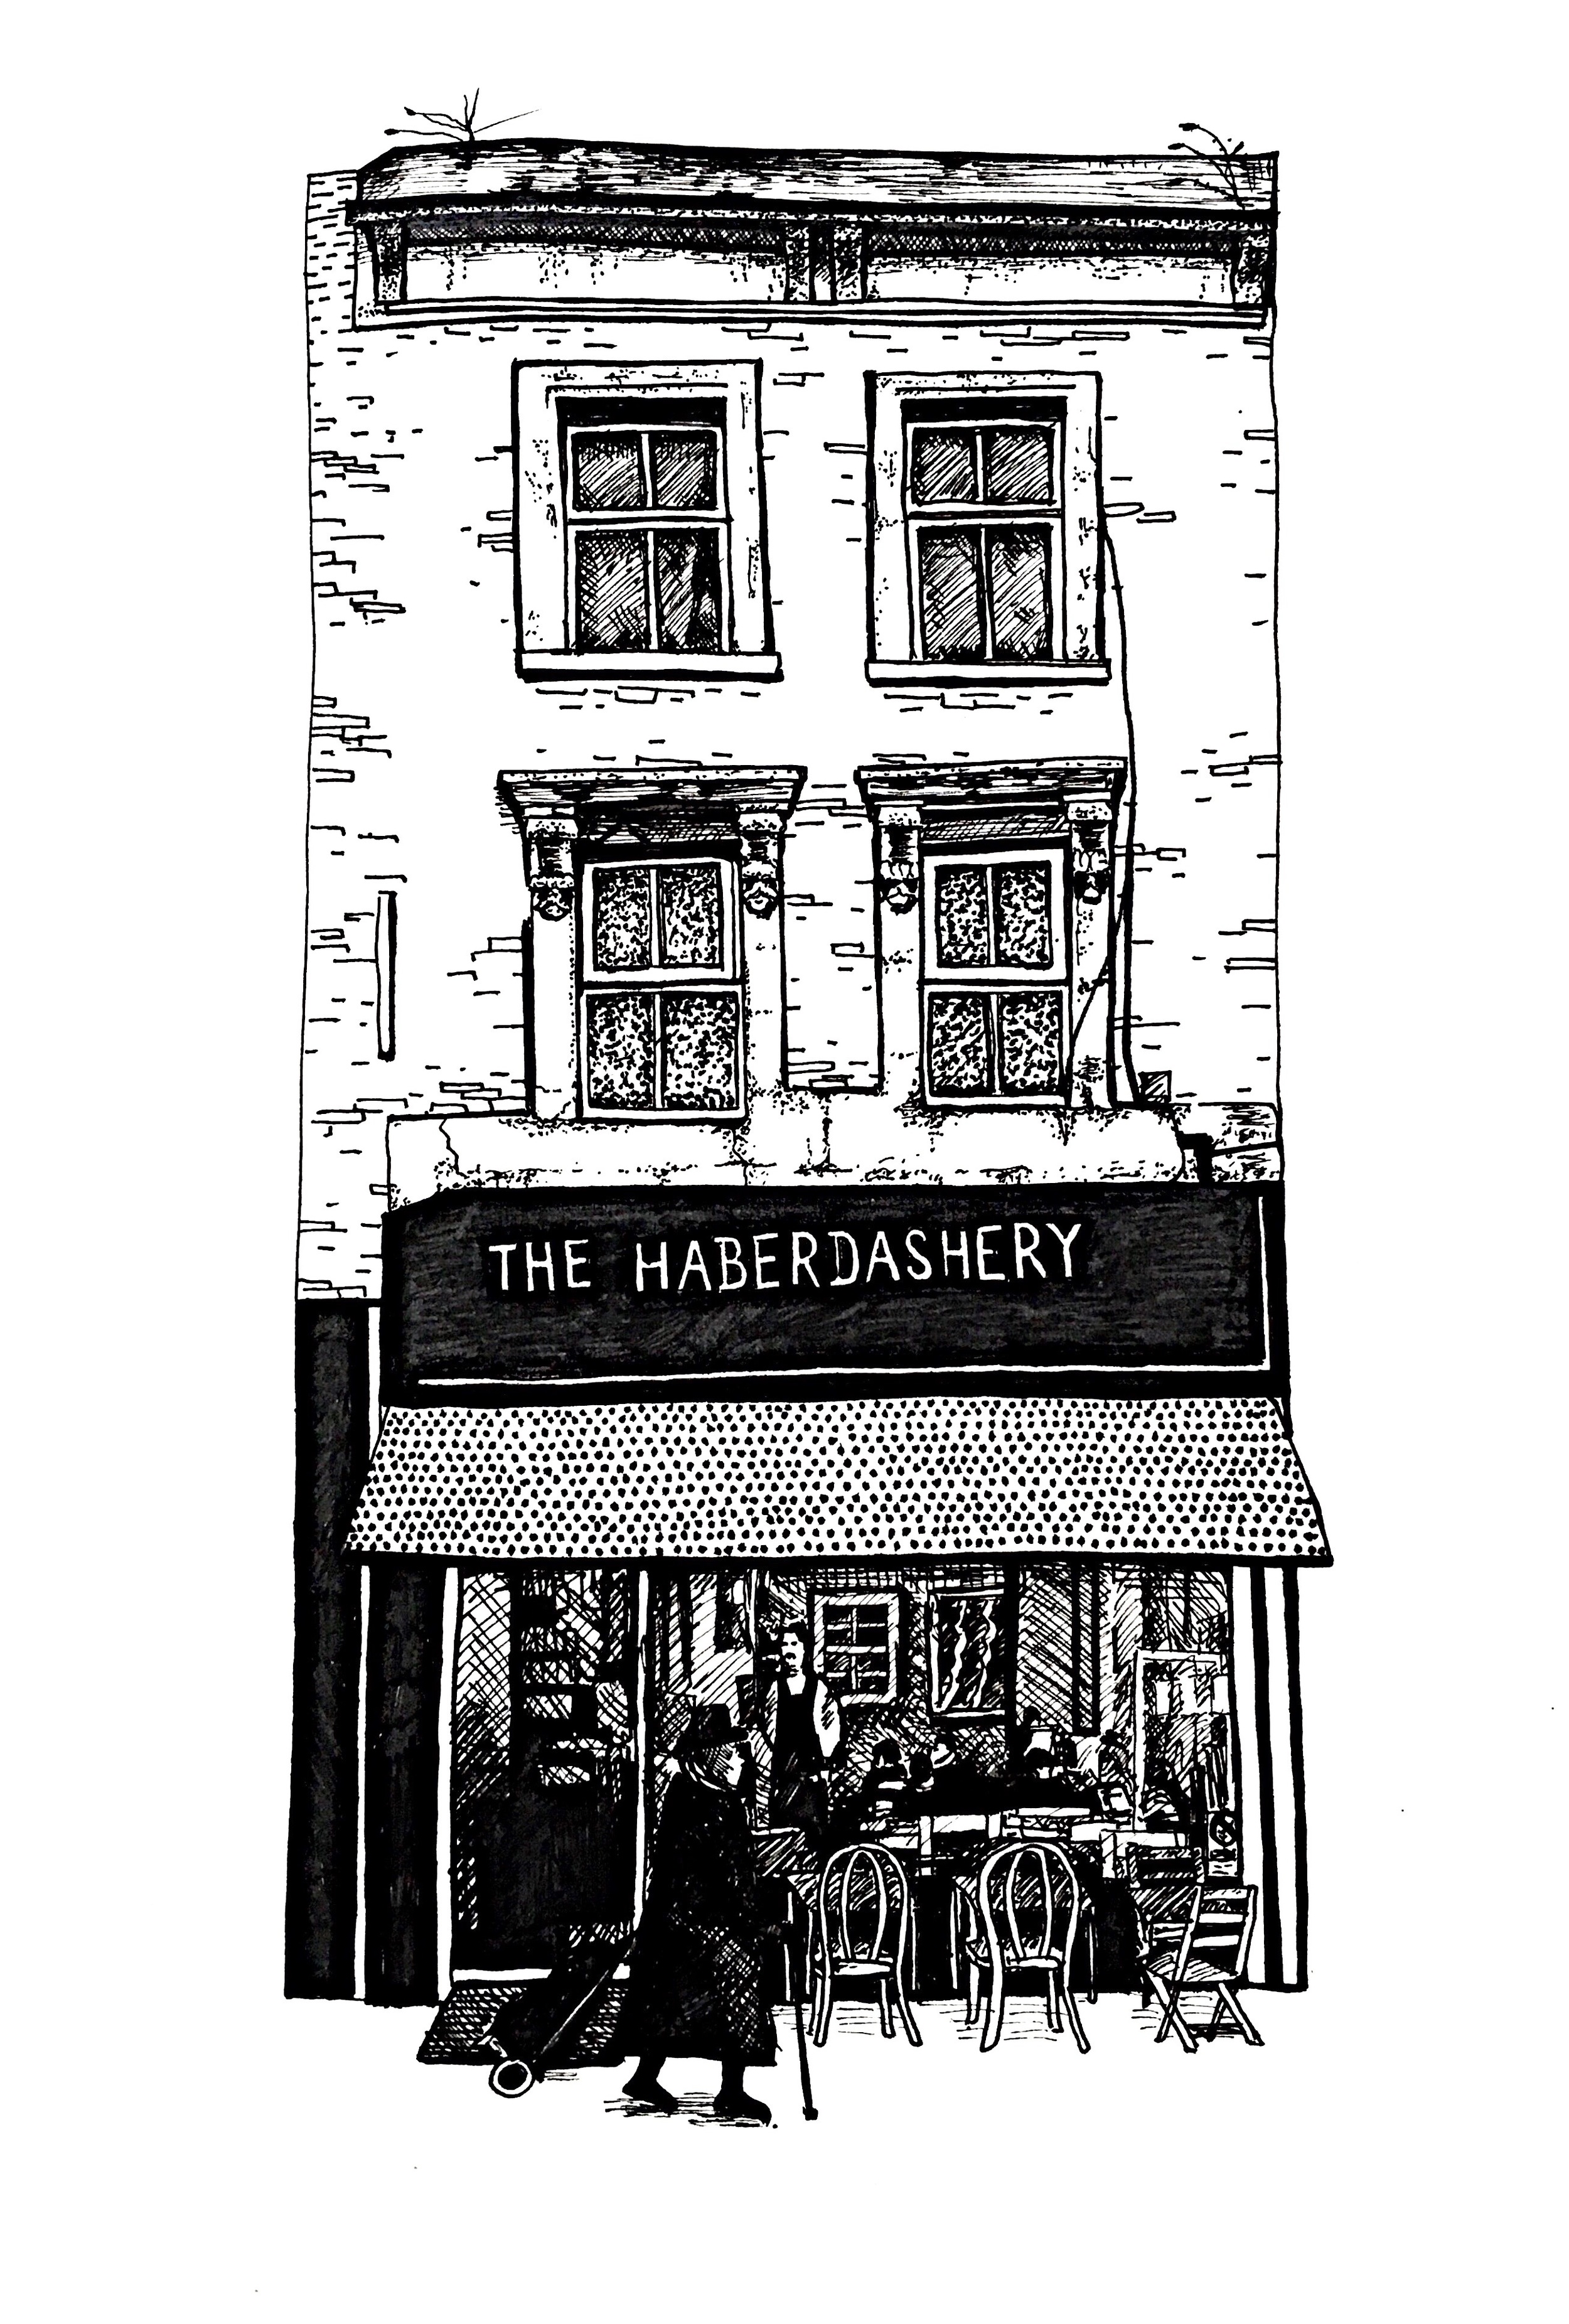 The Haberdashery, Stoke Newington, London